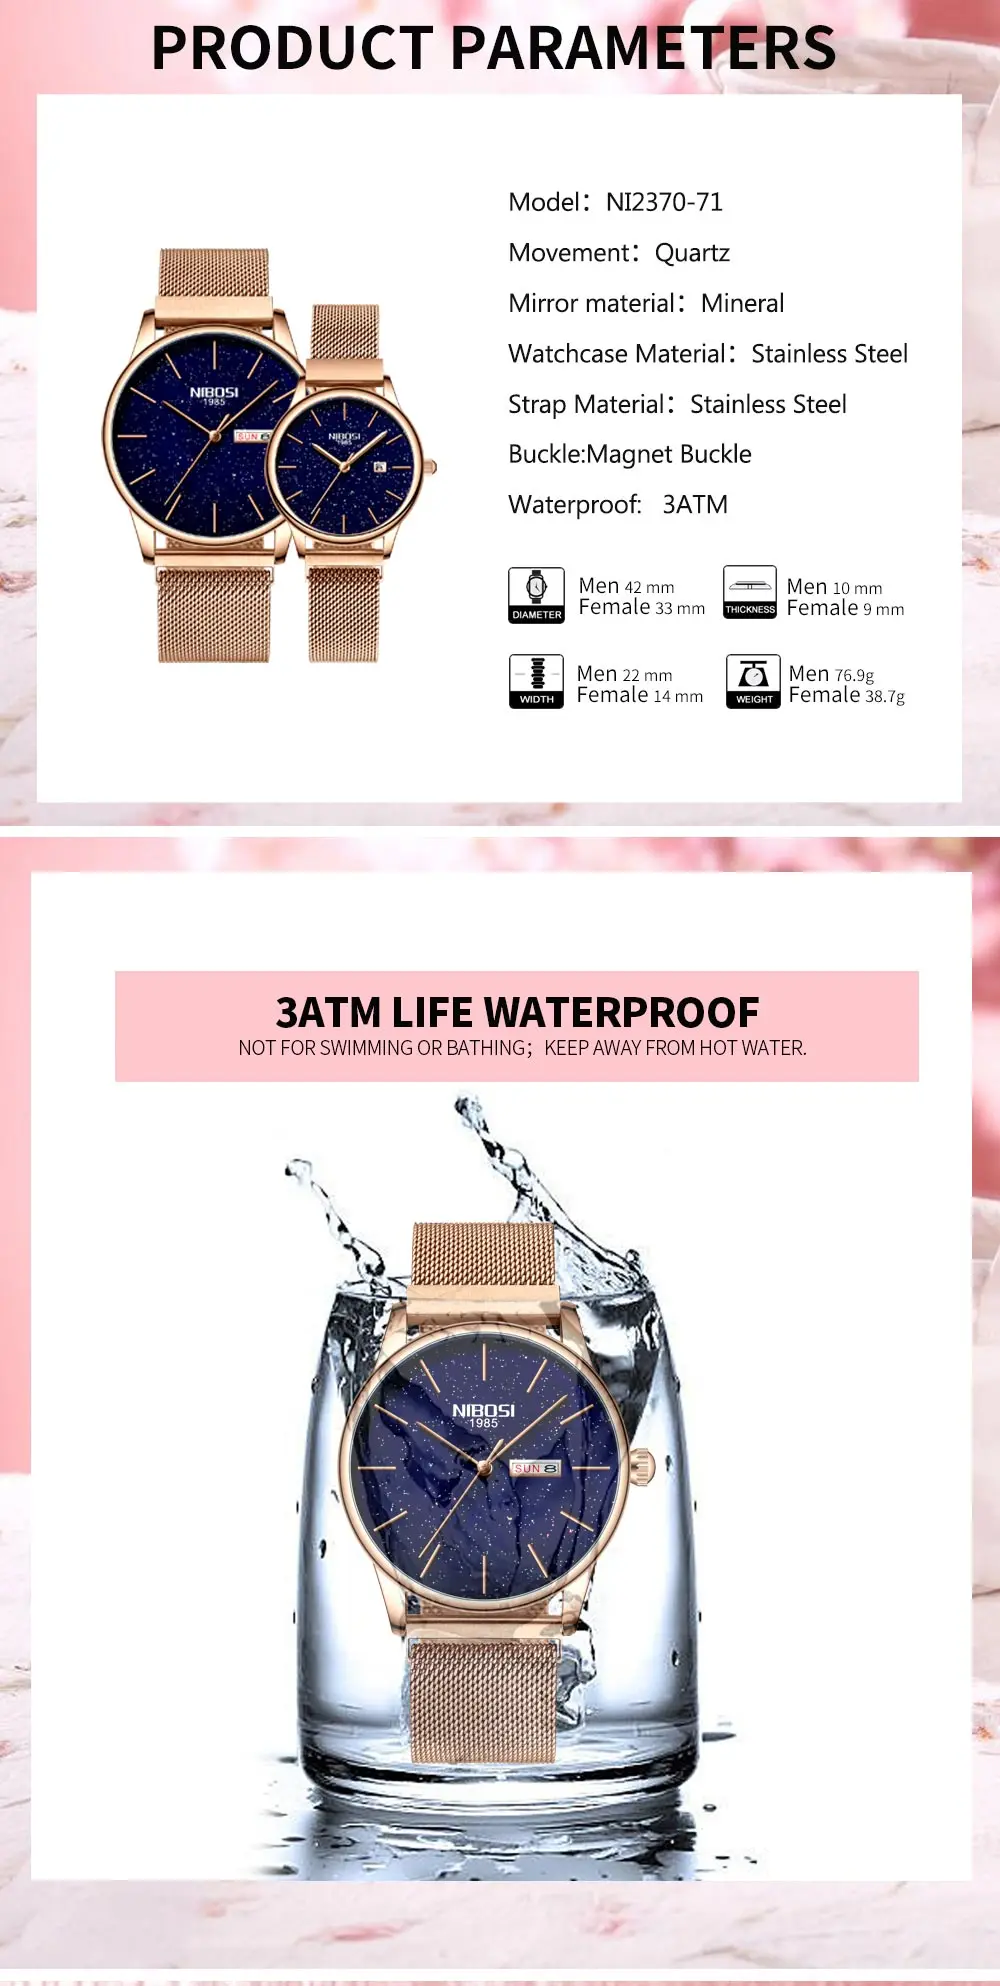 NIBOSI часы для пар водонепроницаемые мужские и женские часы Роскошные брендовые элегантные женские часы из нержавеющей стали Relogio Feminino